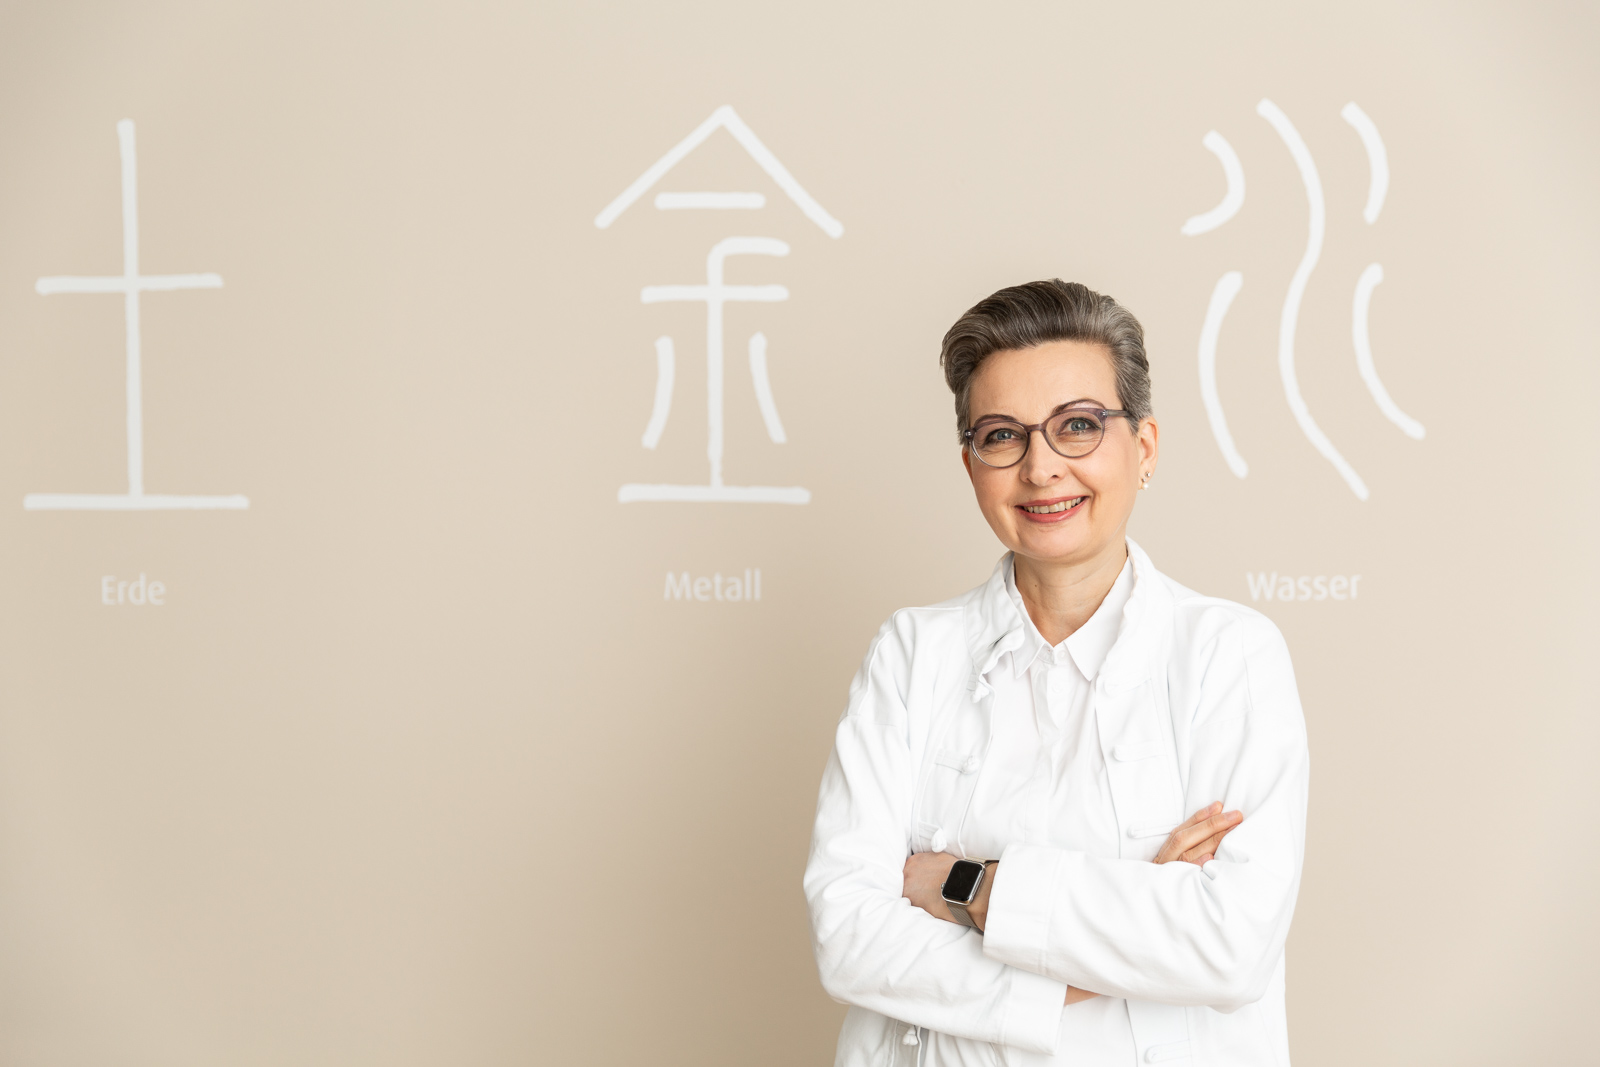 Portrait von Dr. med. Nicola Winckler-Schumann. Sie steht vor einer Wand mit chinesischen Zeichen für die Elemente.